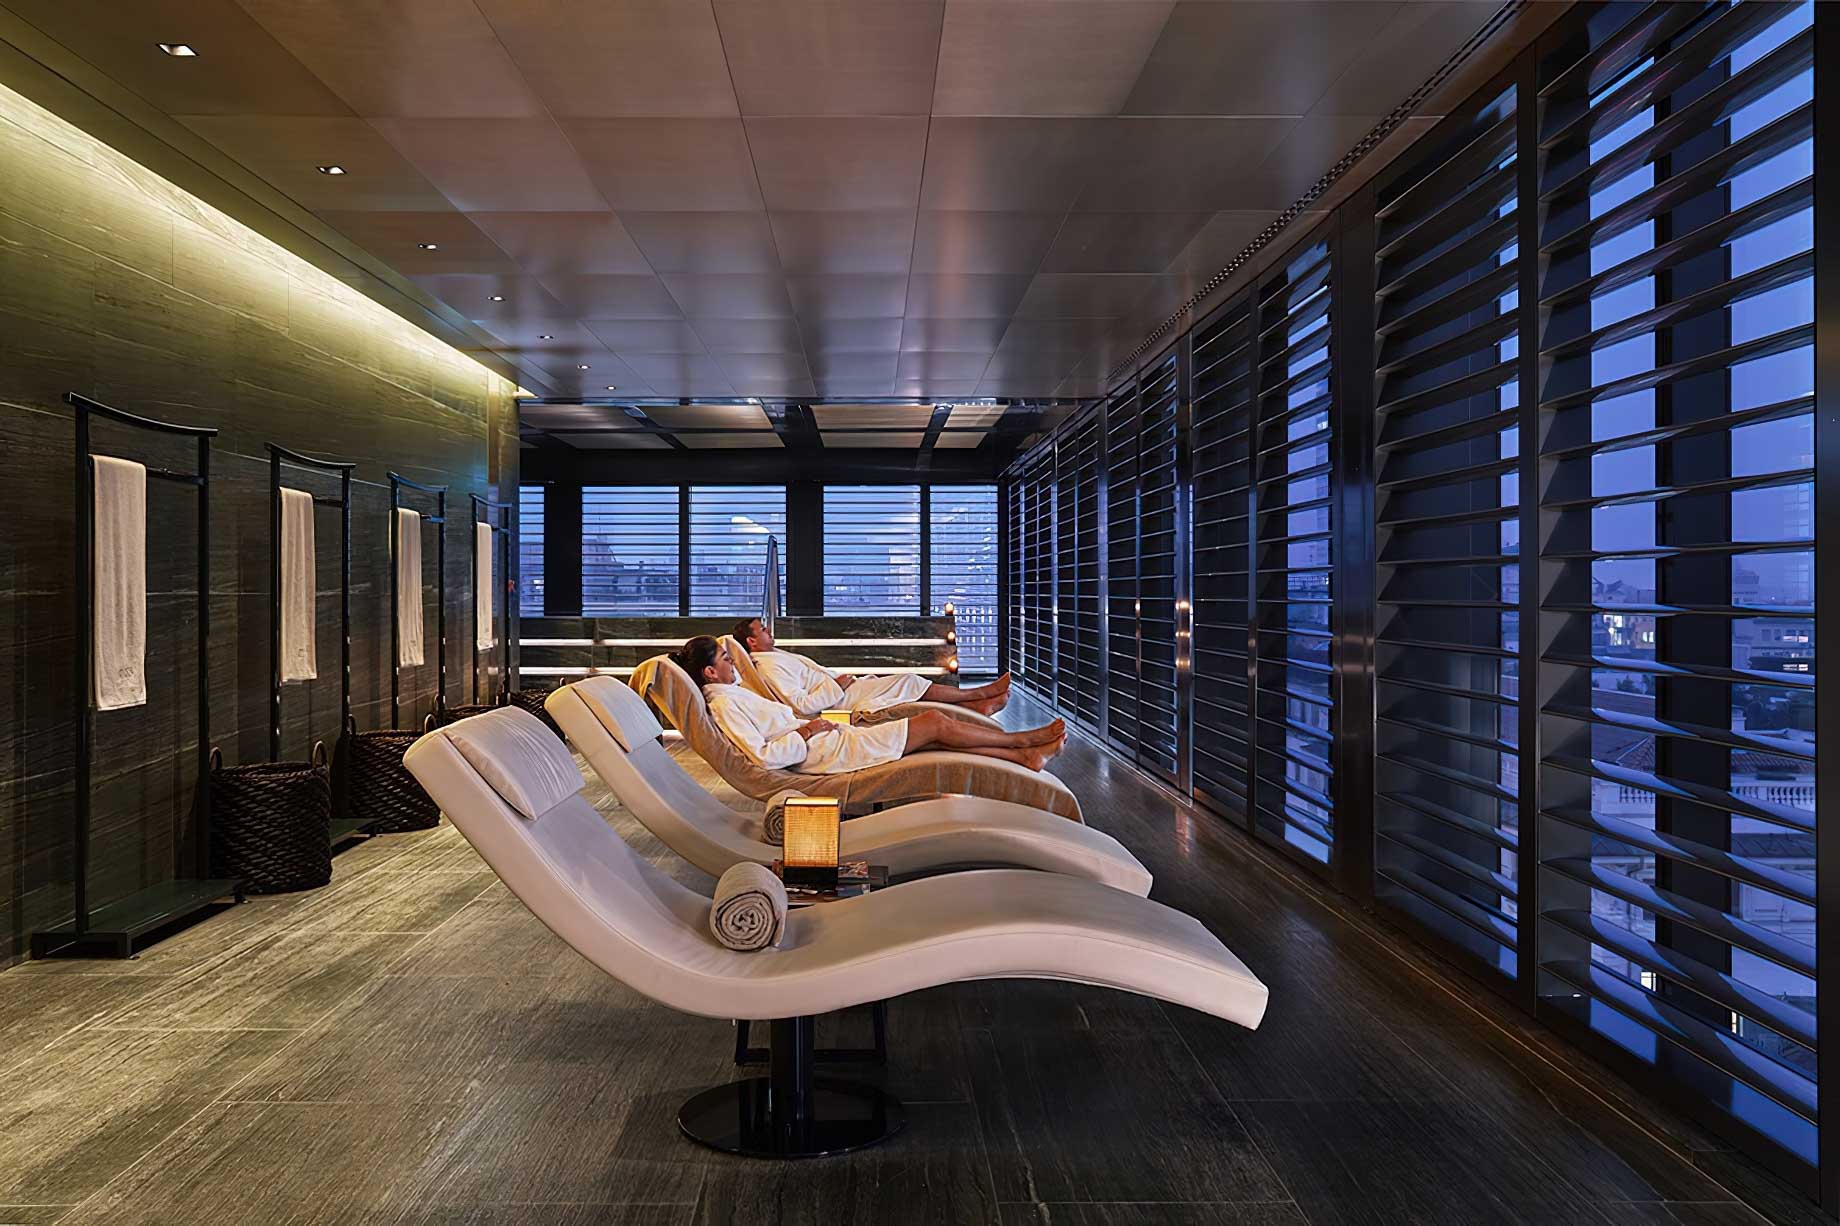 136 – Armani Hotel Milano – Milan, Italy – Armani SPA Lounge Chairs